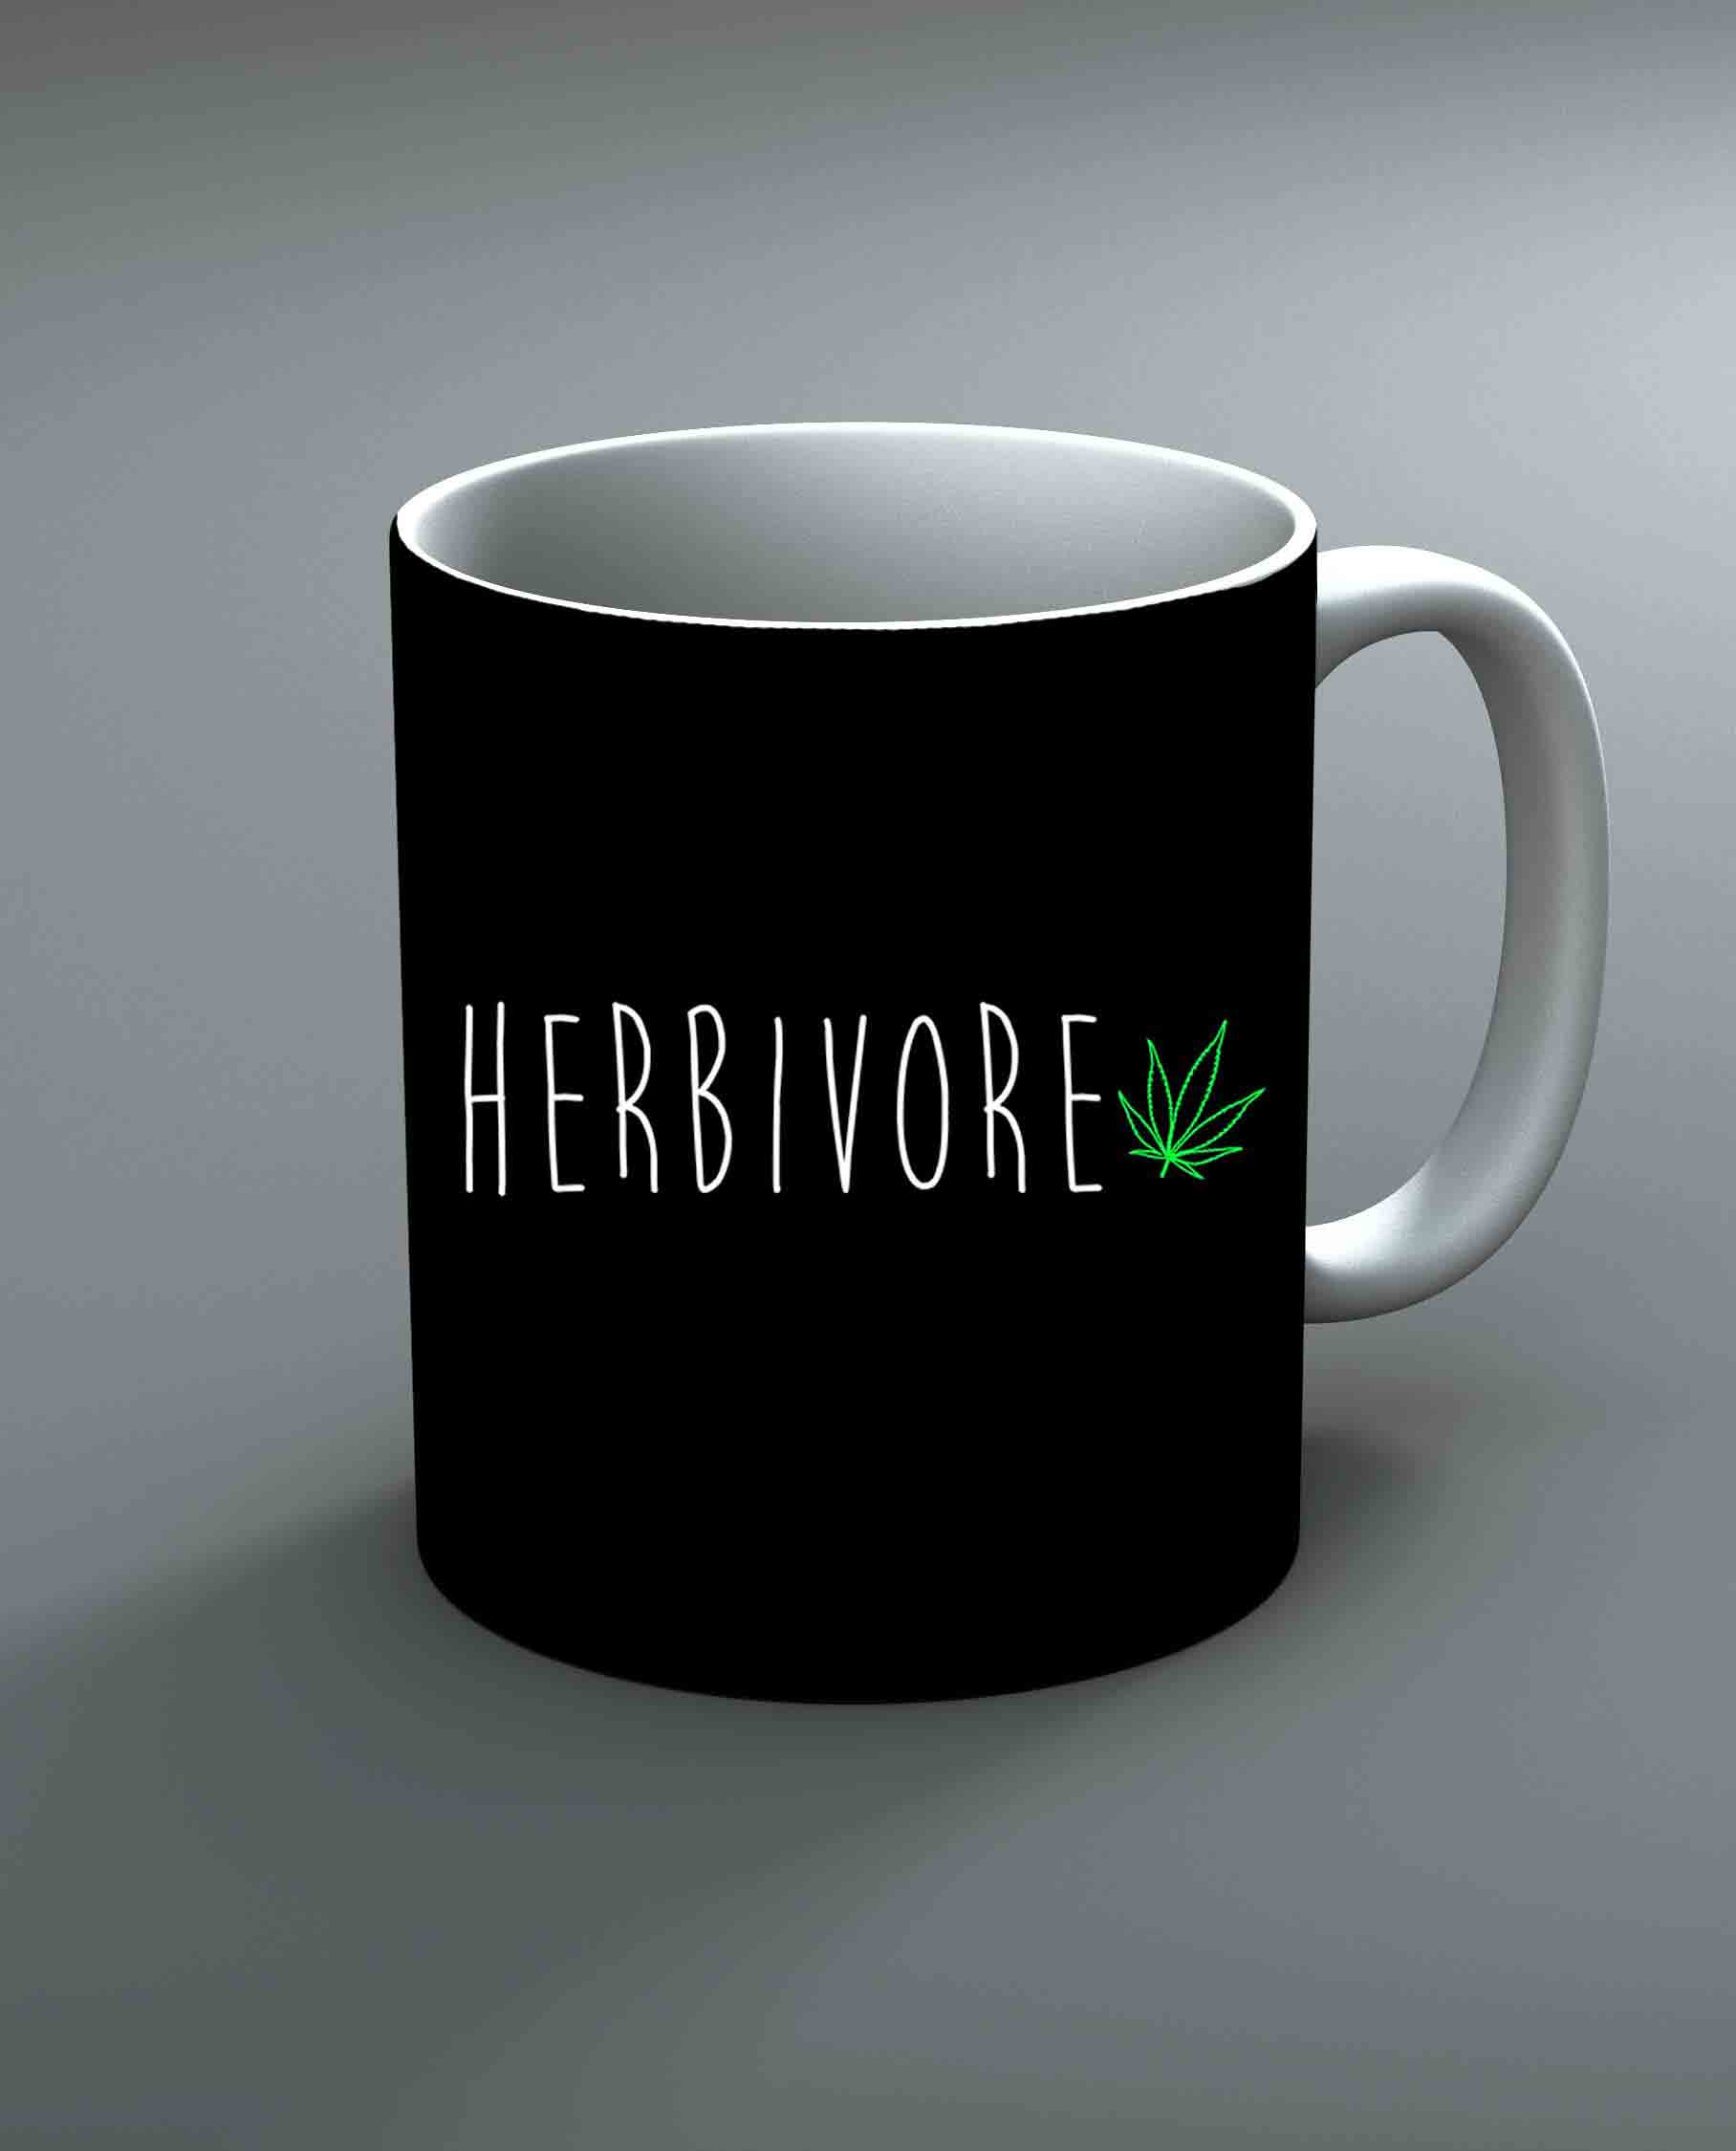 Herbivore Mug By Roshnai - Pickshop.Pk